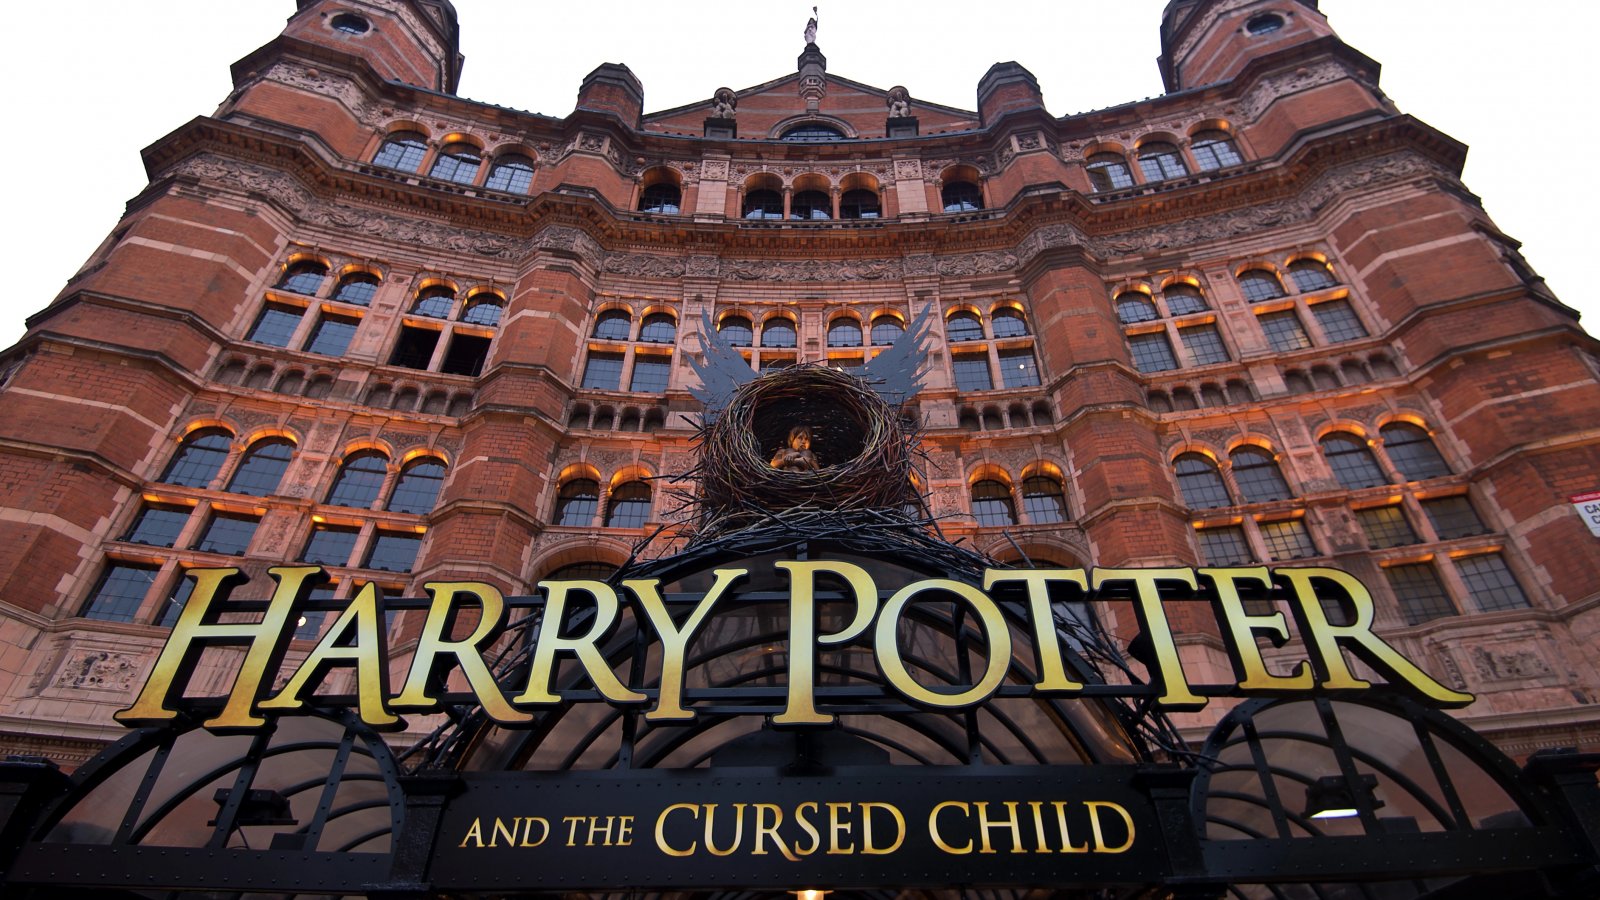 Harry Potter e la Maledizione dell'Erede diventerà un film prodotto da Warner?